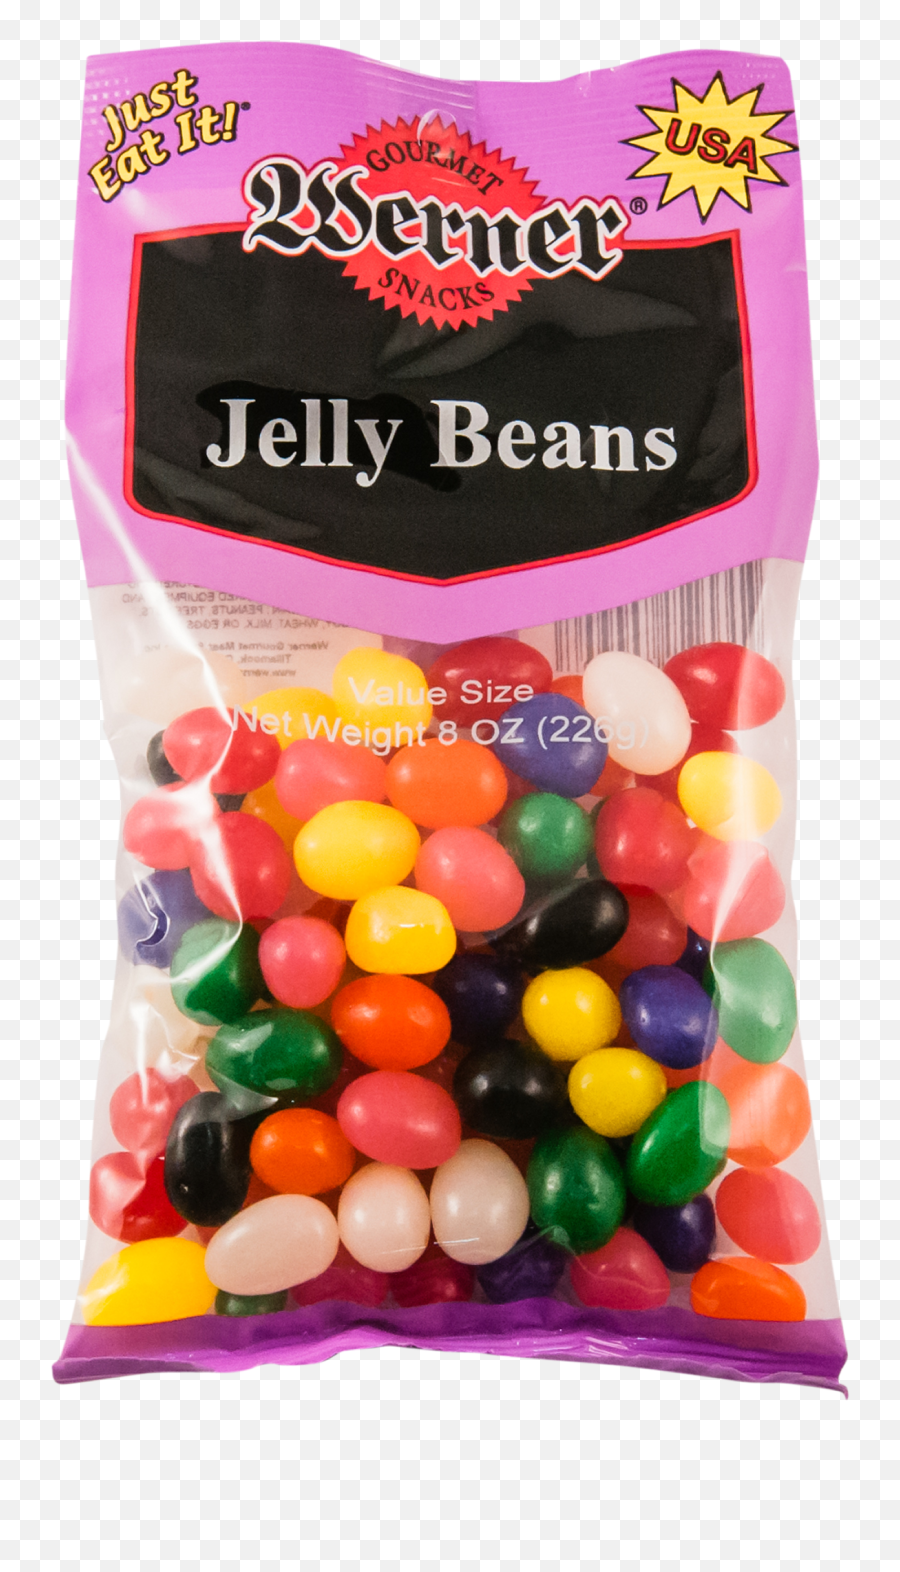 Jelly Beans - Bag Of Jelly Beans Png,Jelly Beans Png